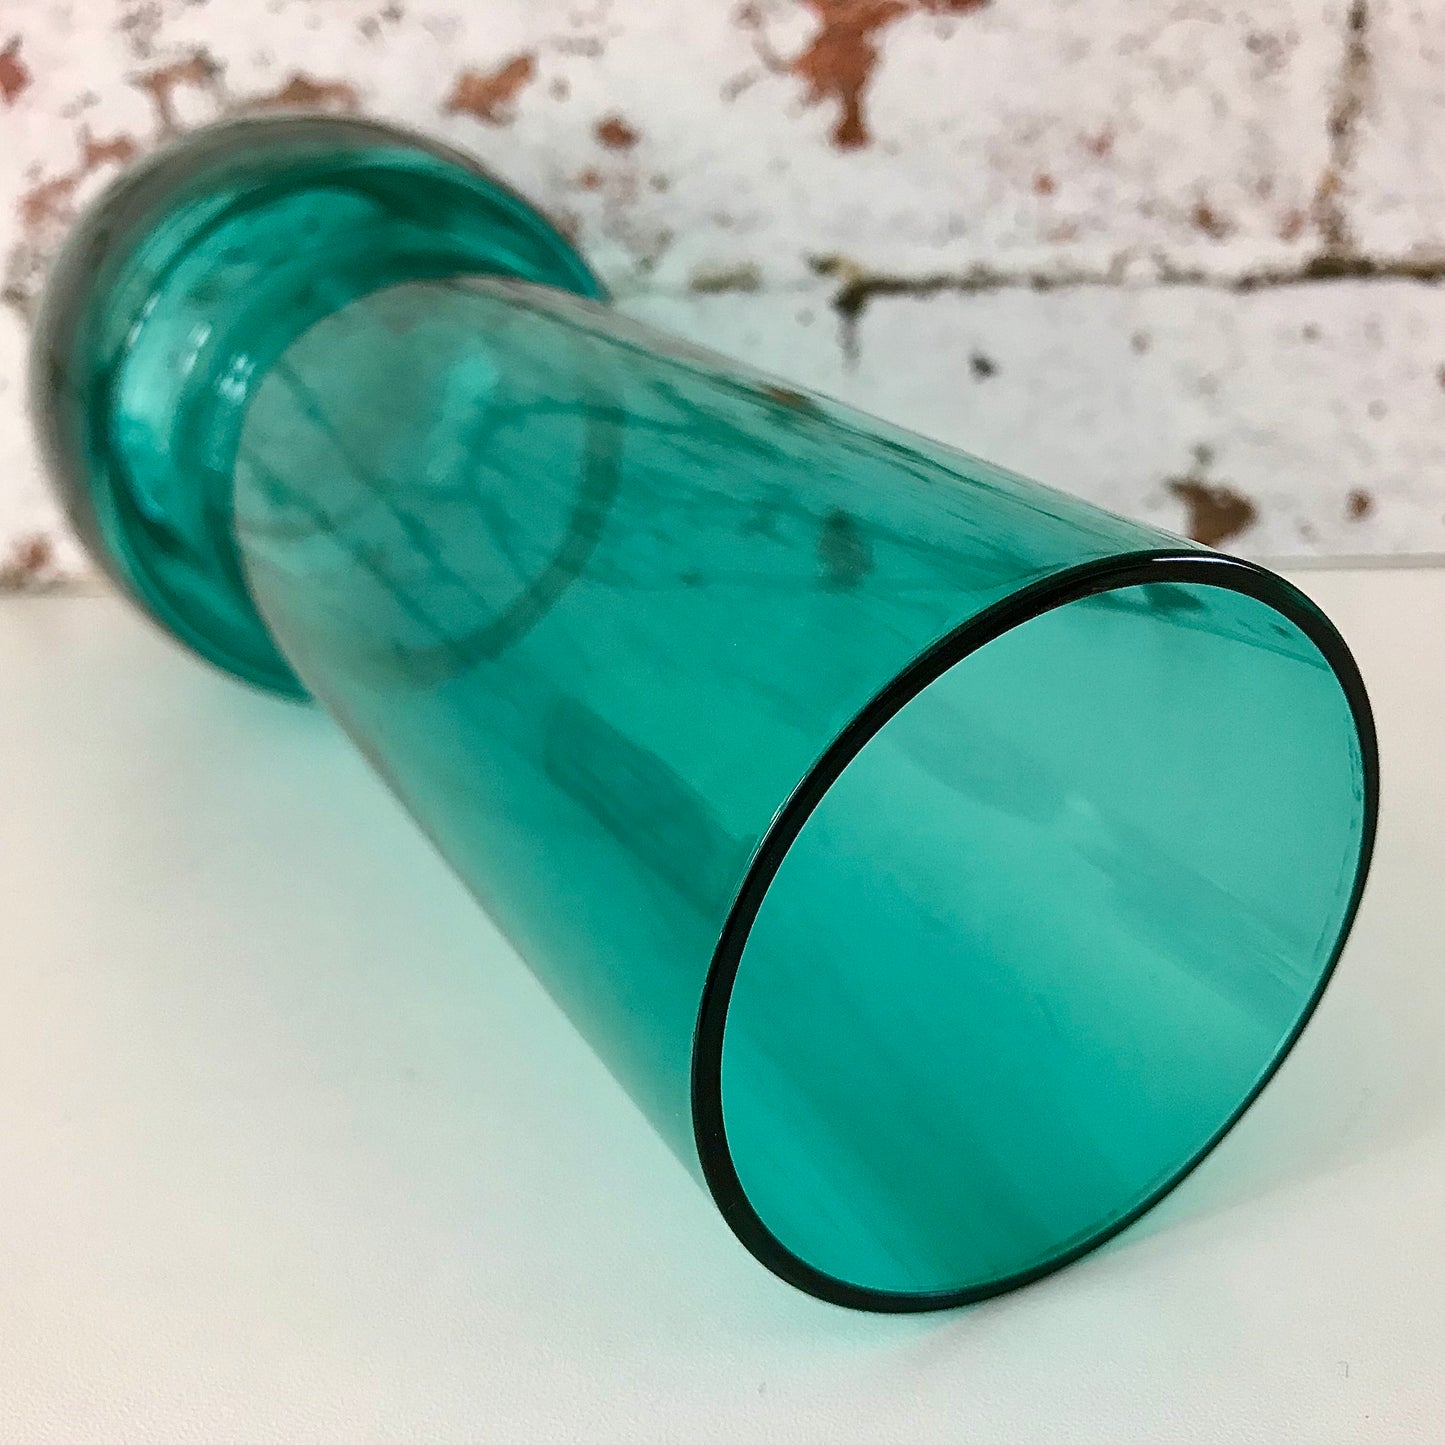 Riihimaki Turquoise Glass Vase 1970s Vintage Scandinavian Finnish 1473